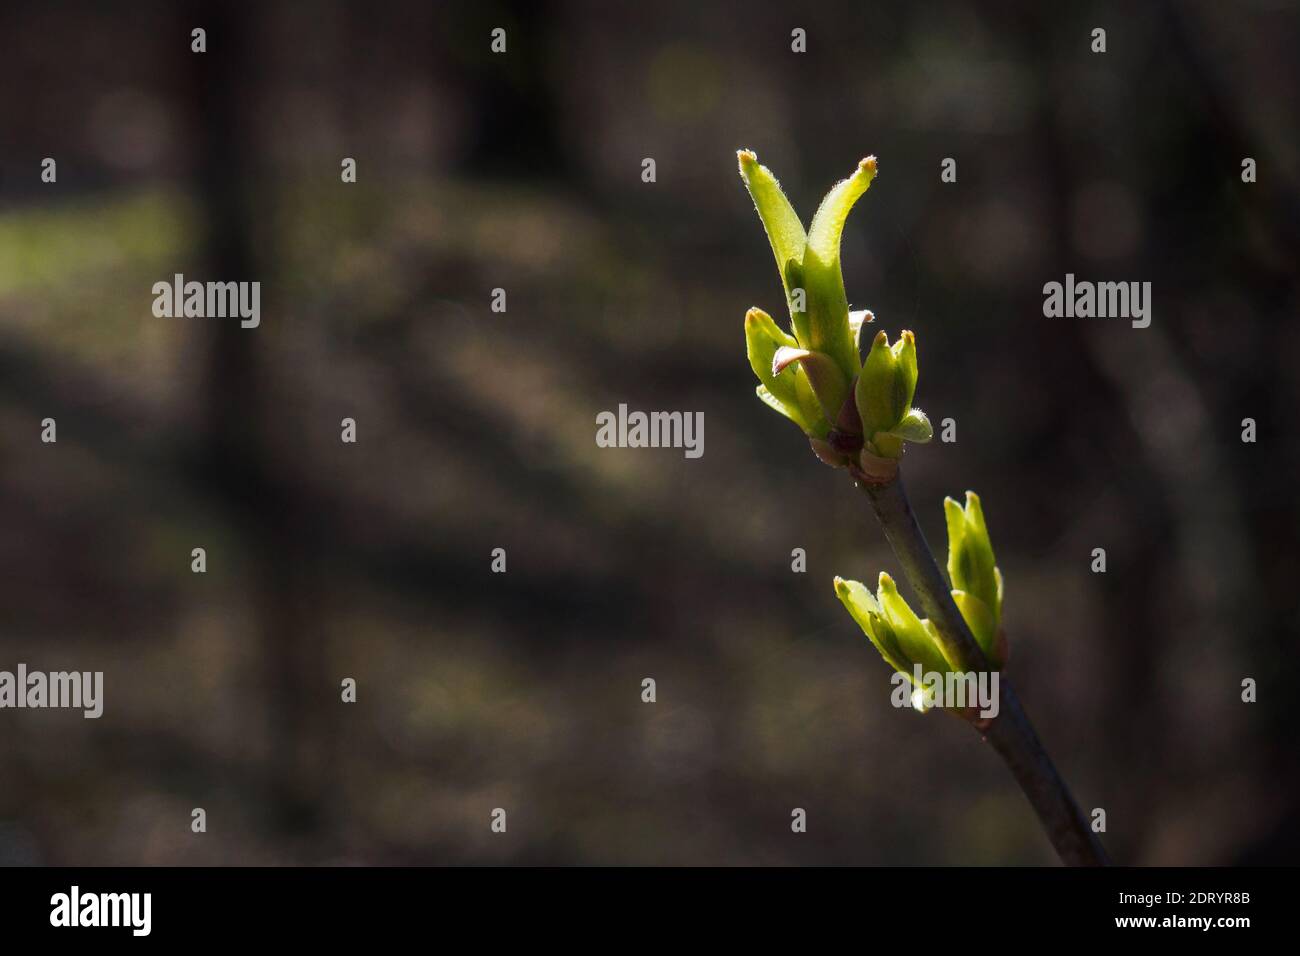 Gros plan de la branche avec de jeunes feuilles vertes le jour du printemps. Copier l'espace pour le texte Banque D'Images